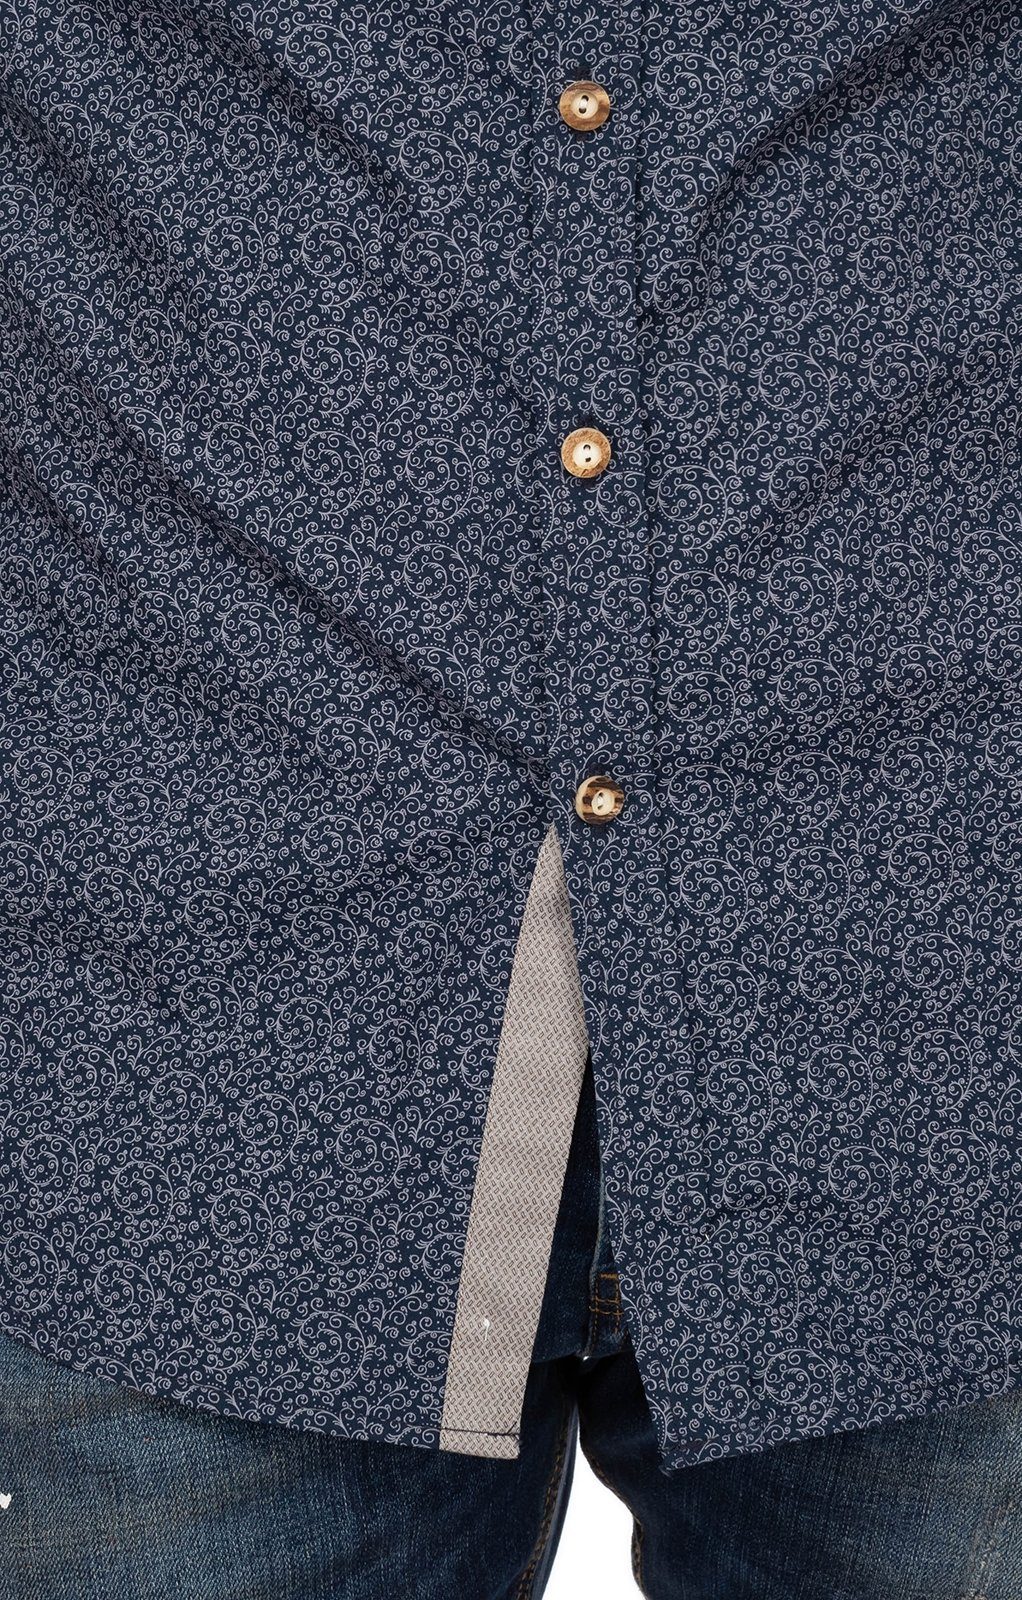 ERIK OS-Trachten Stehkragenhemd Trachtenhemd blau